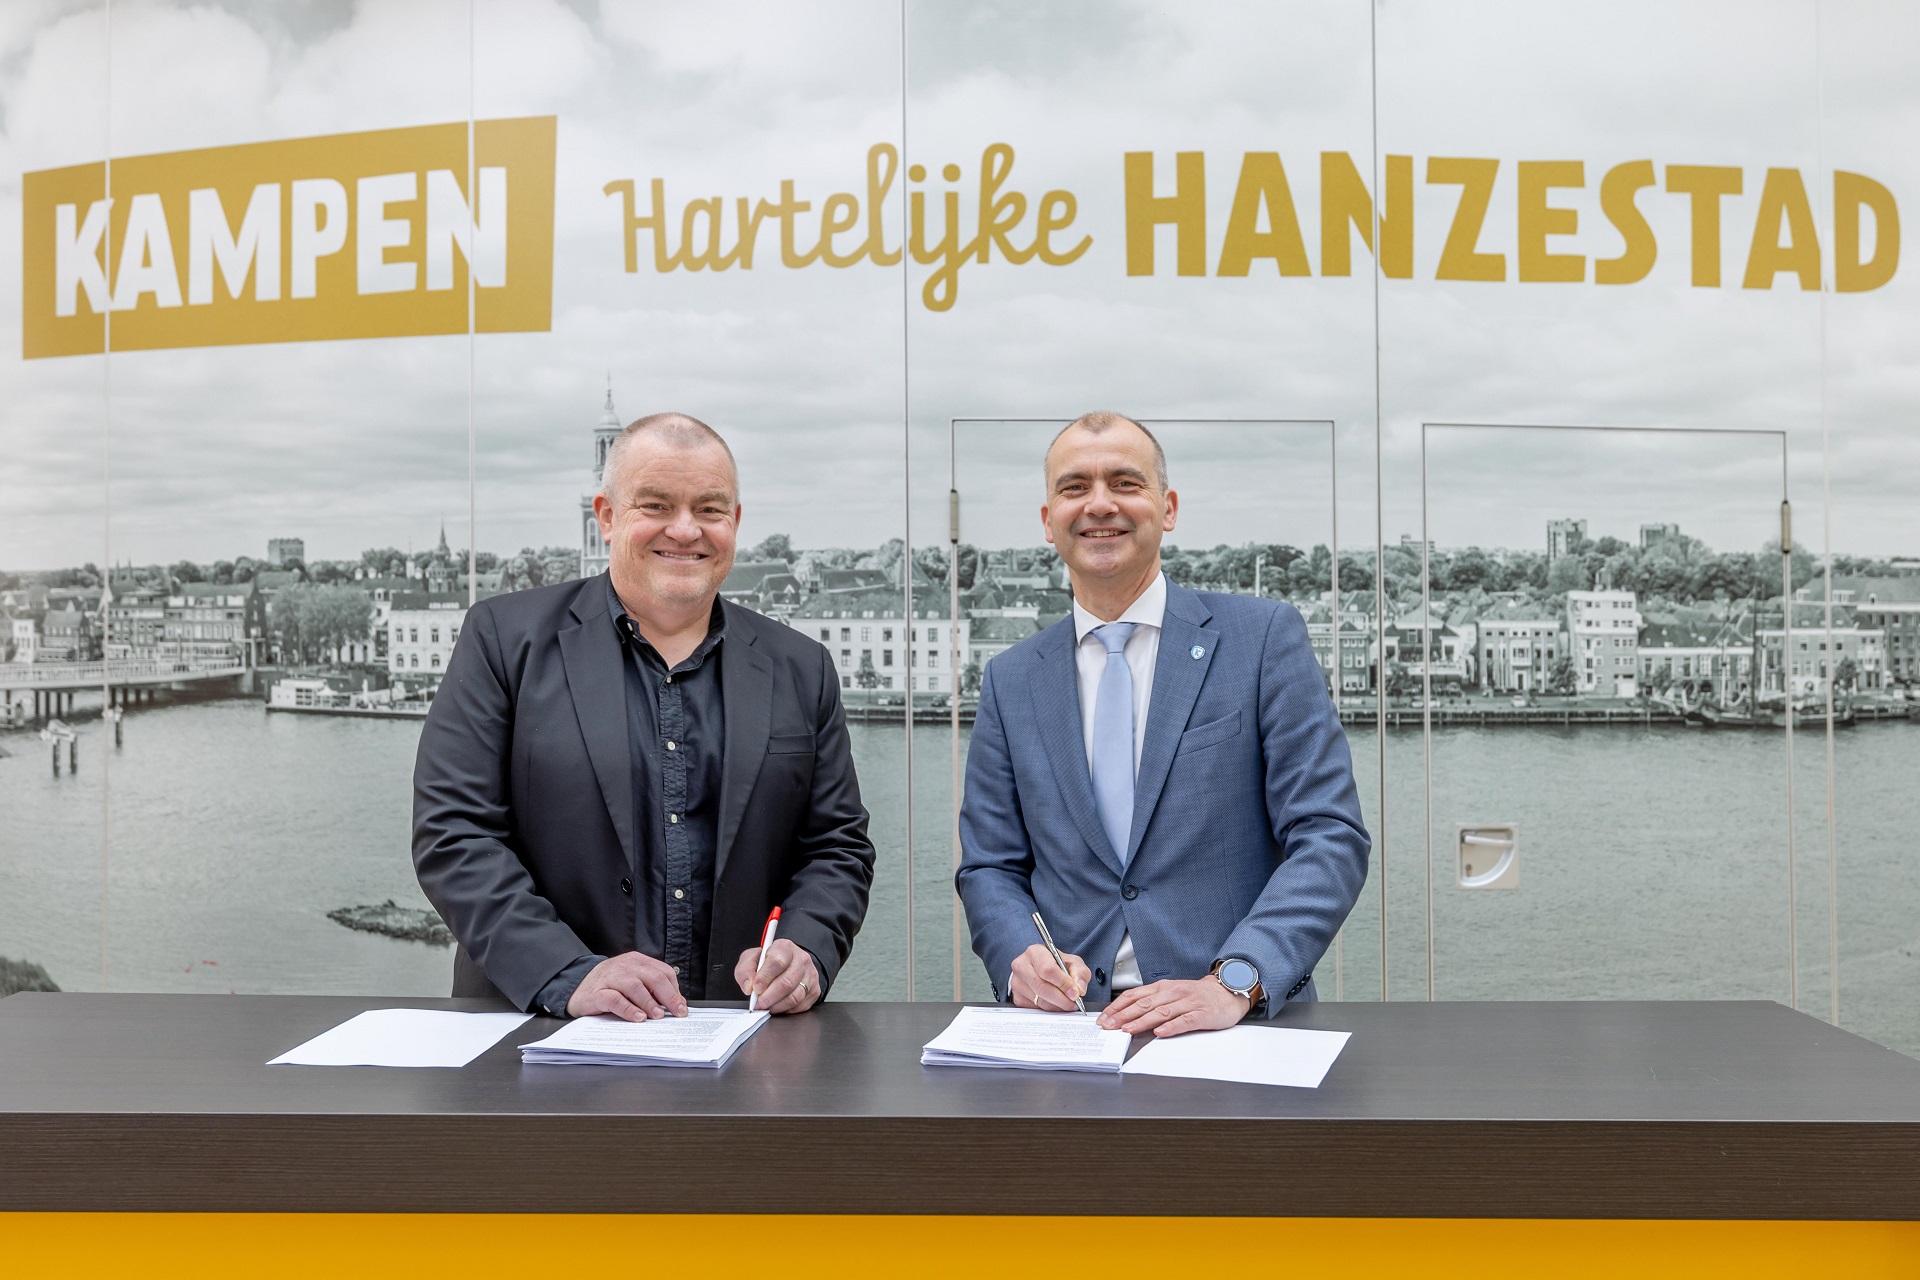 Overeenkomst getekend voor bouw sporthal Ichthus Kampen